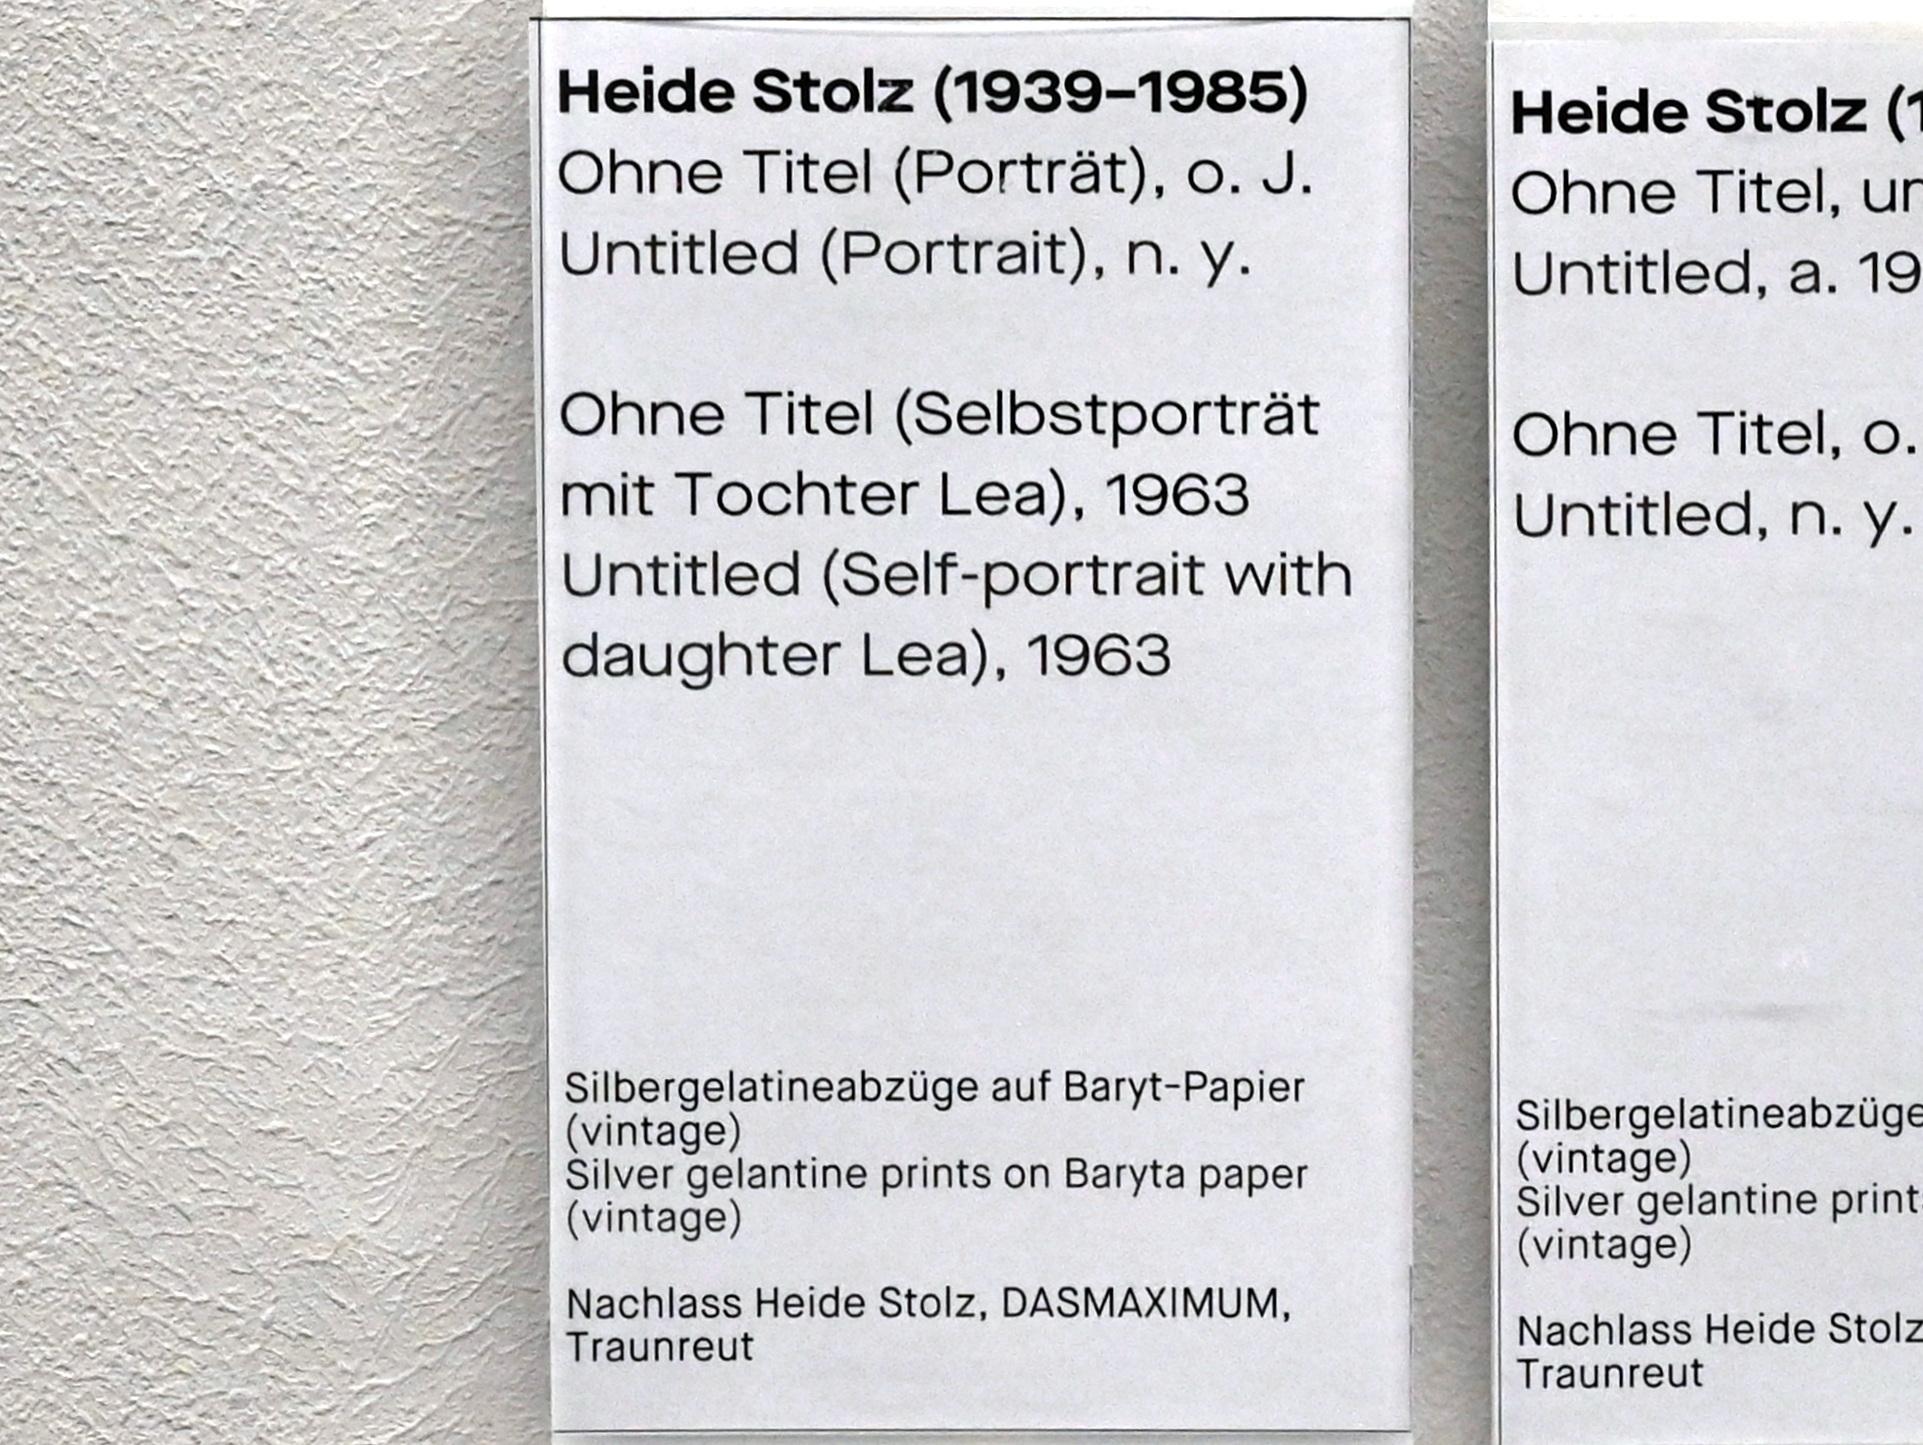 Heide Stolz (1960–1969), Ohne Titel (Porträt), Chemnitz, Museum Gunzenhauser, Saal 1.1 - Uwe Lausen und Heide Stolz, Undatiert, Bild 2/2